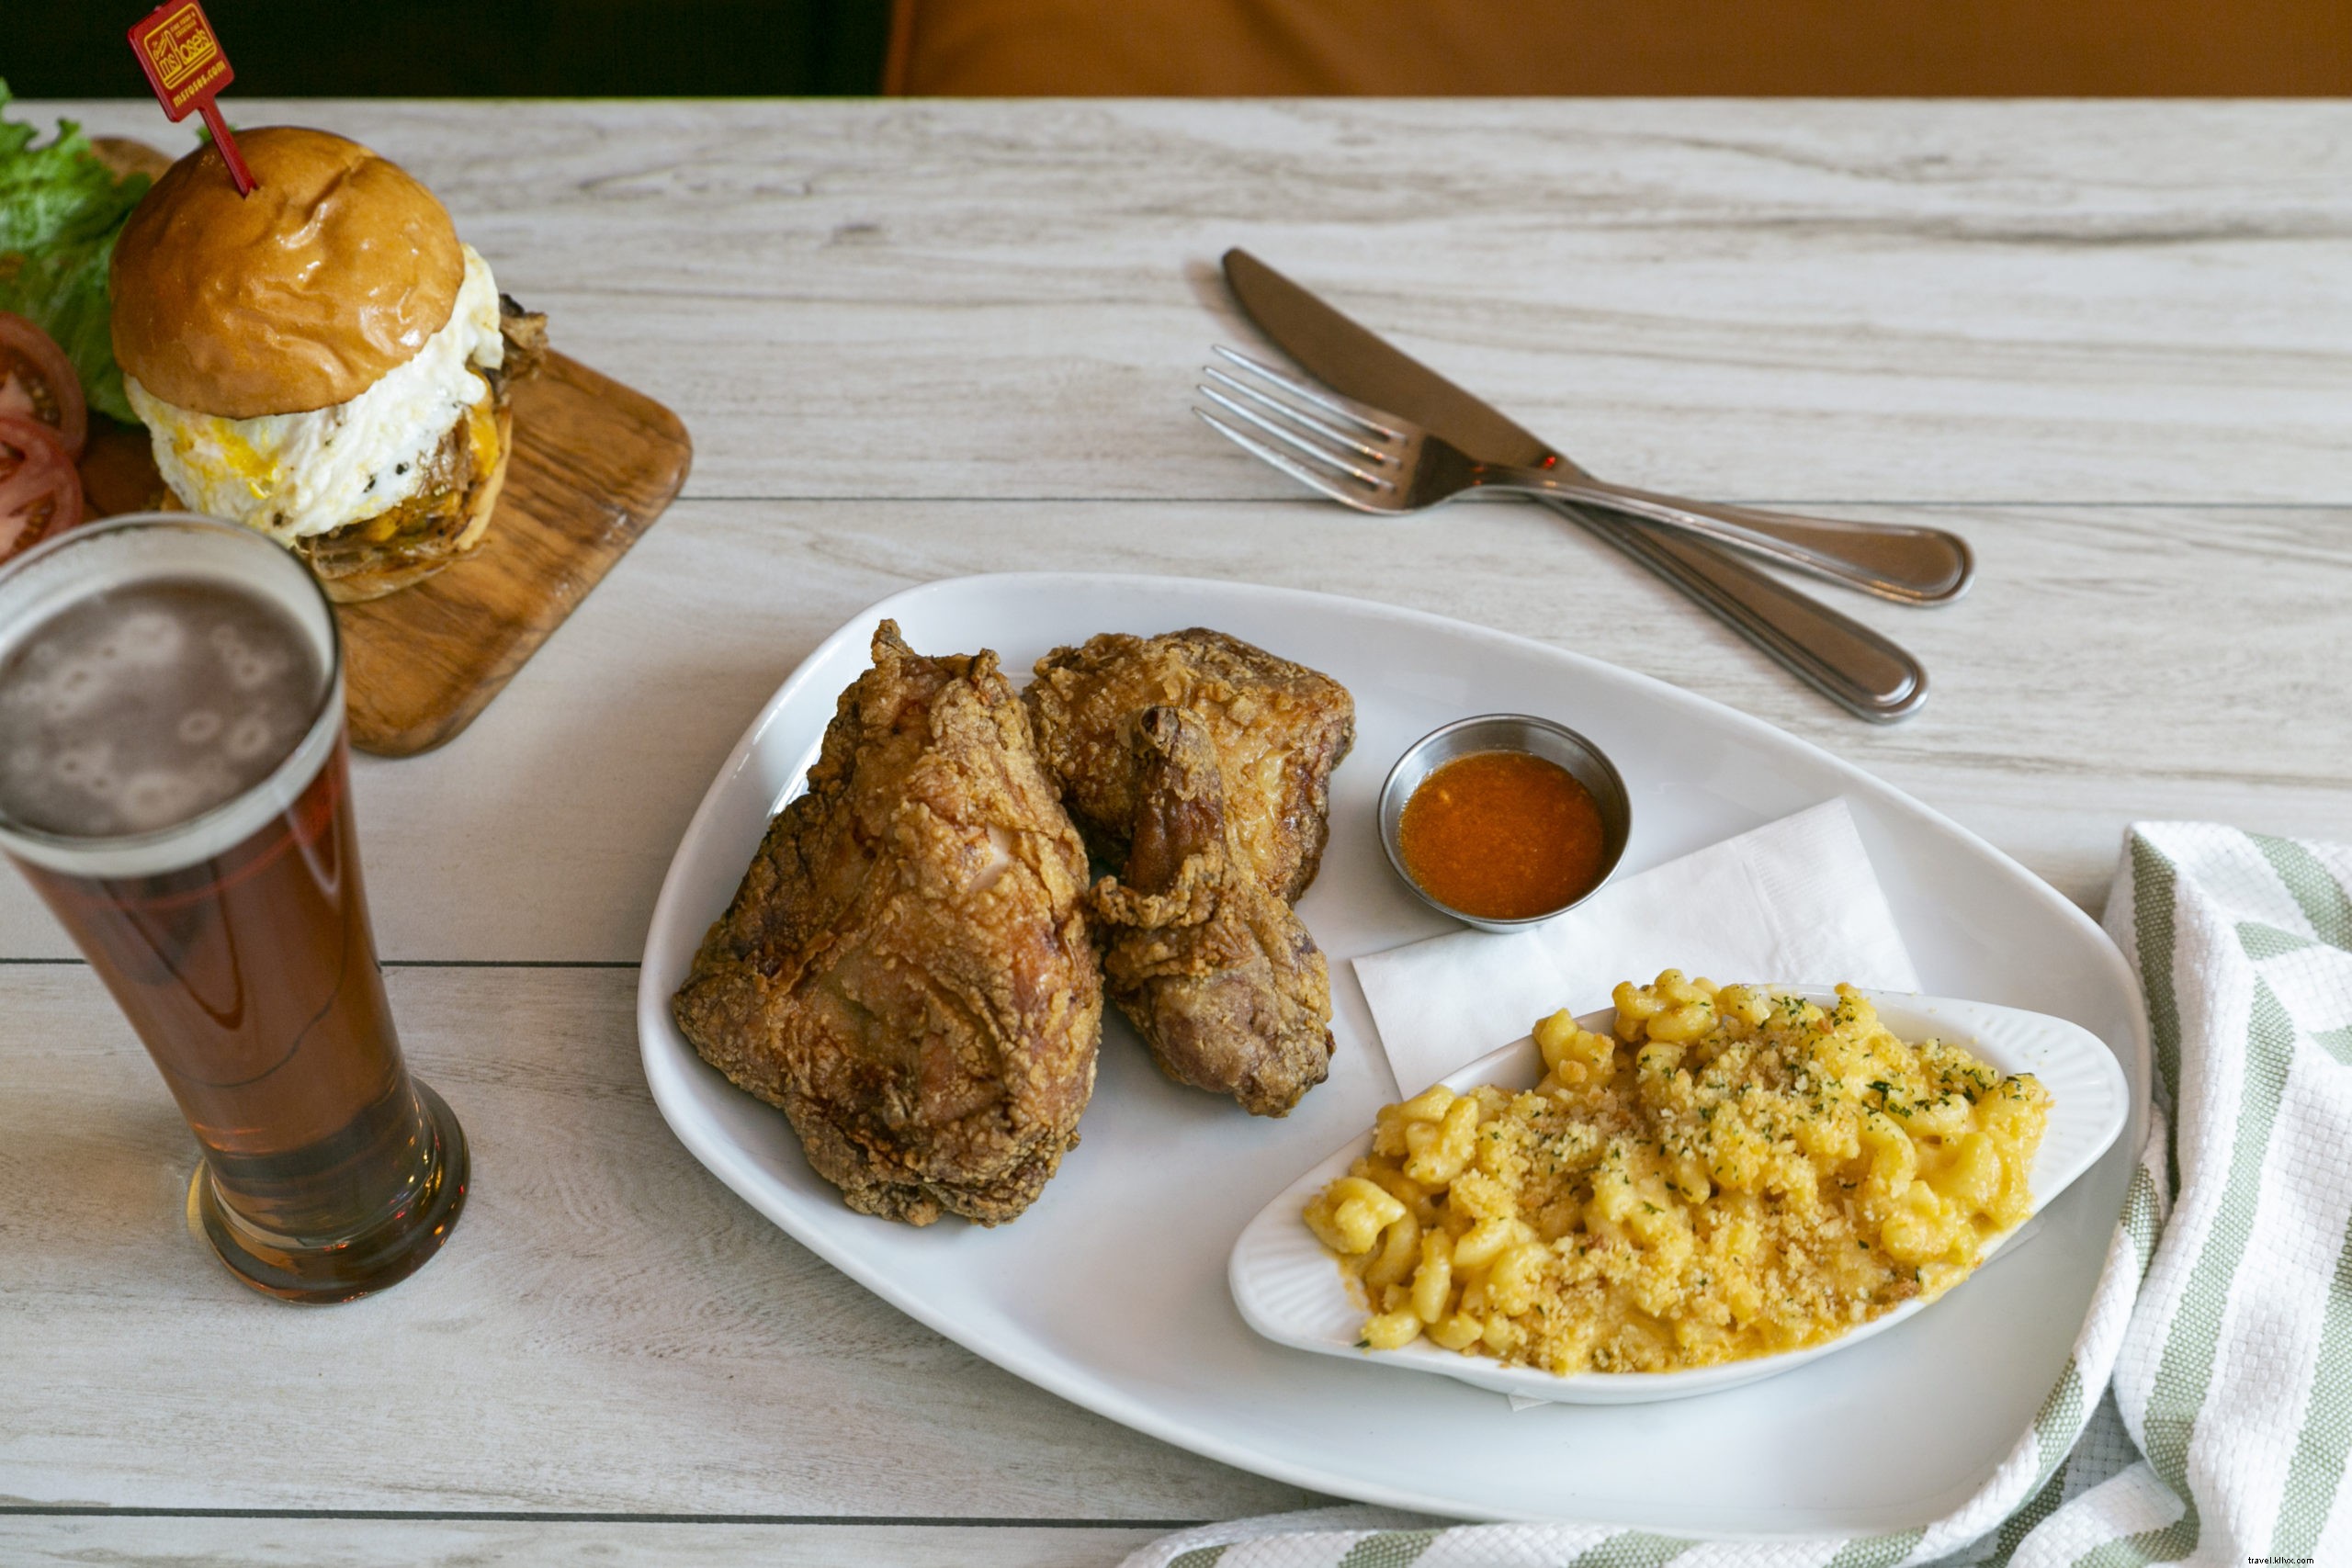 Os 17 melhores locais para frango frito em Charleston 